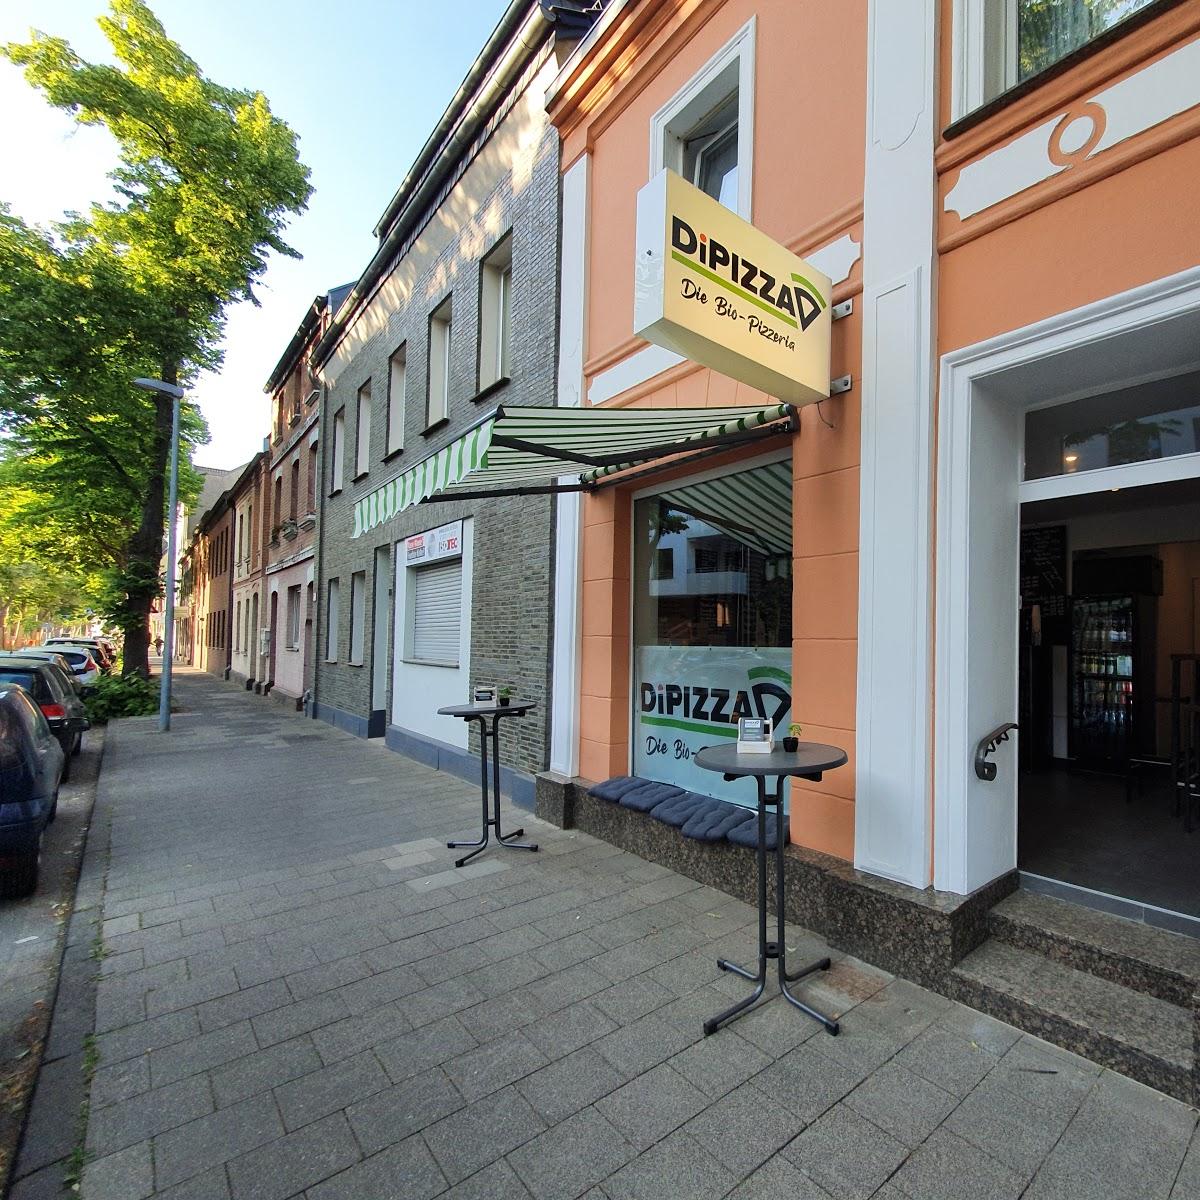 Restaurant "DiPIZZA - Die Bio-Pizzeria, Pizza, Pasta, Wraps in Düsseldorf Benrath" in Düsseldorf